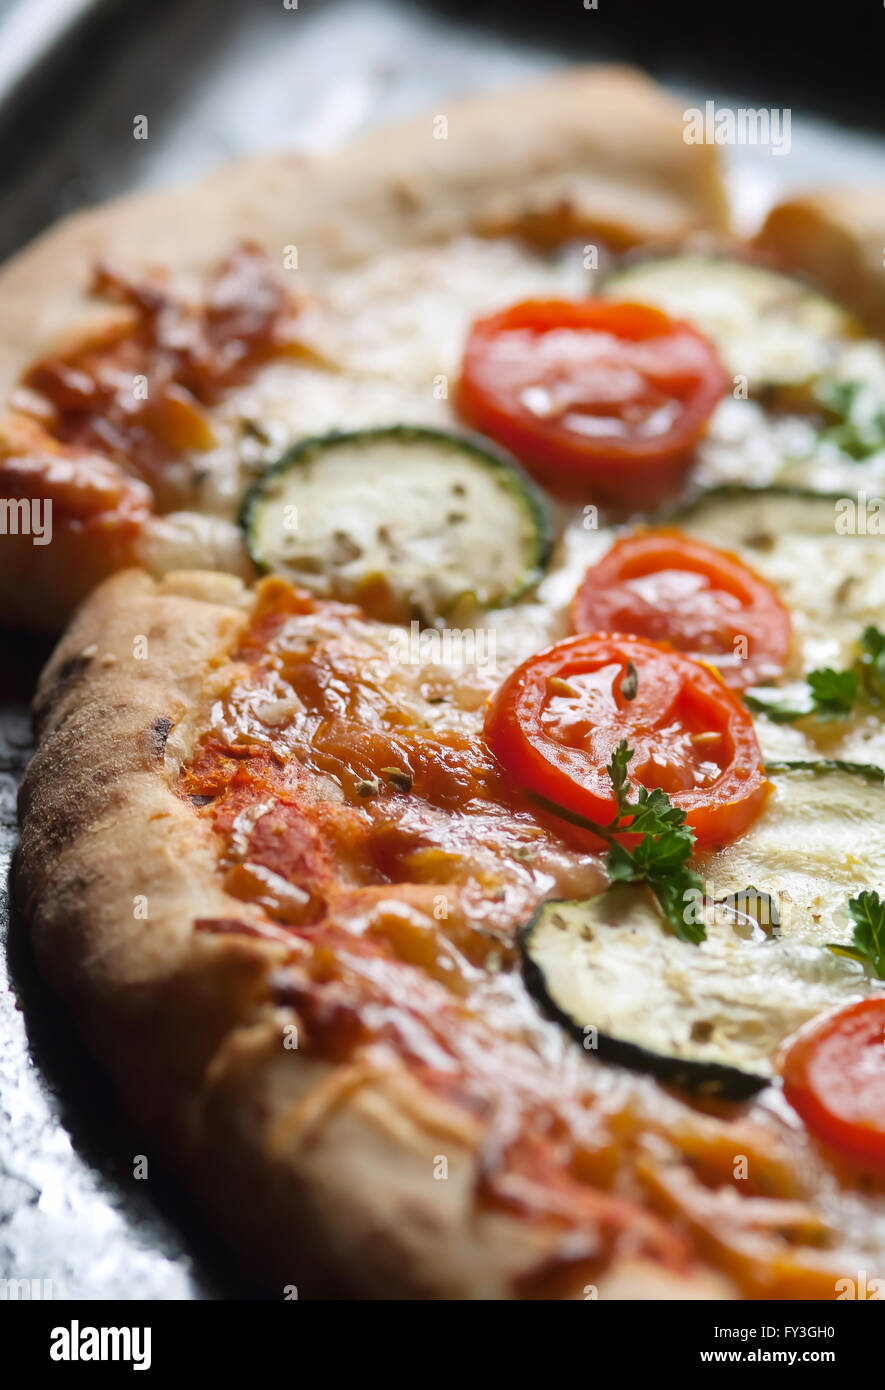 Vegetarian pizza with organic zucchini Stock Photo